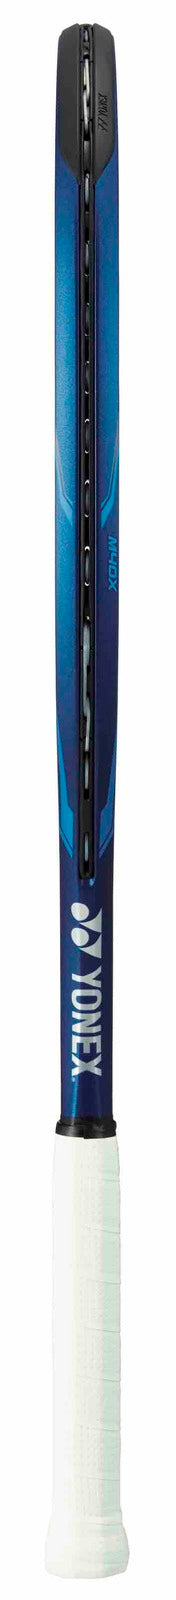 Yonex 2020 Ezone 105 275g 4 1/8 Tennis Racquet - Deep Blue